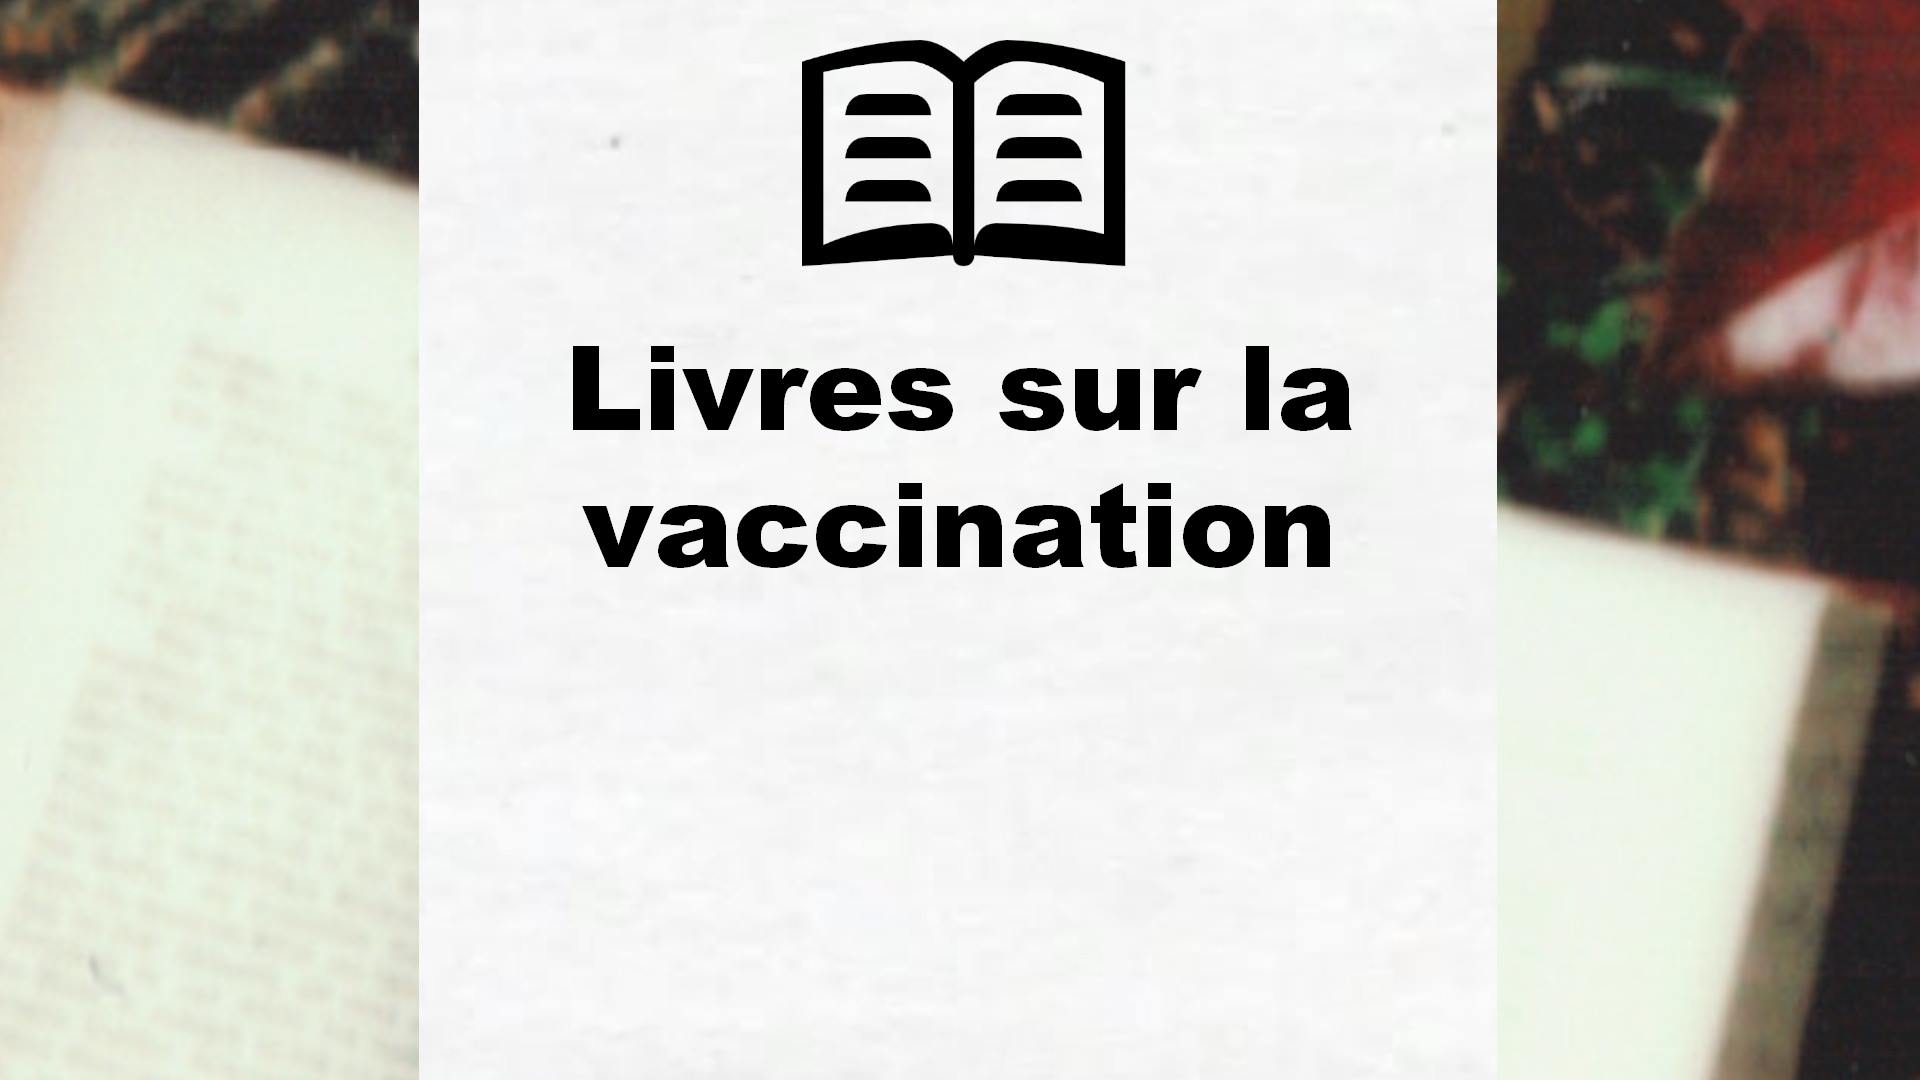 Livres sur la vaccination